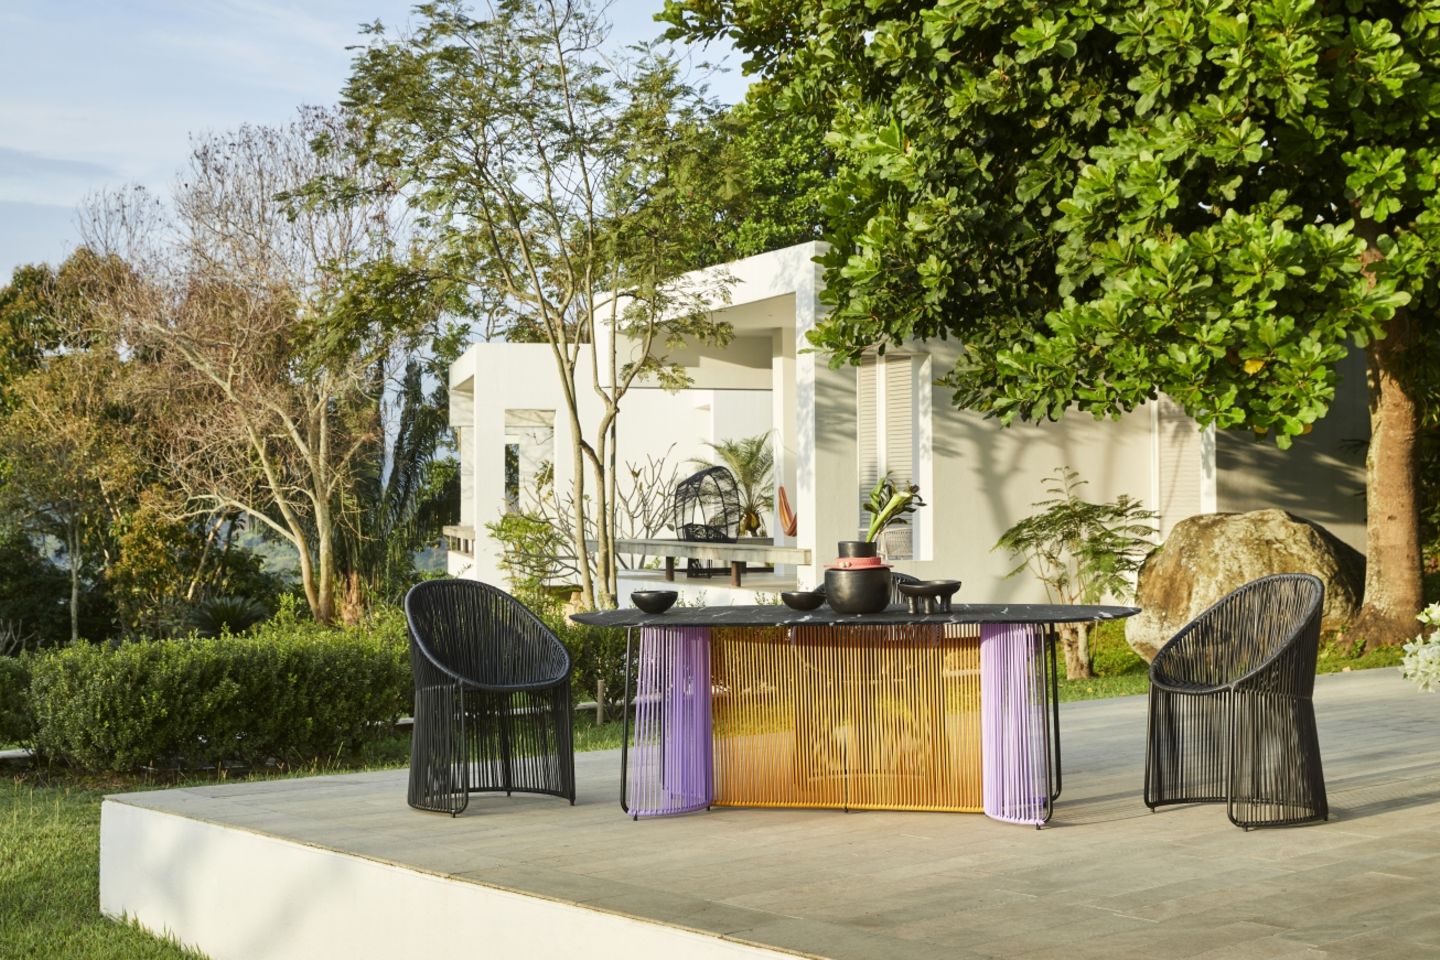 Tisch "Cartagenas" in Violett und Senfgelb auf einer Terrasse mit Bäumen im Hintergrund